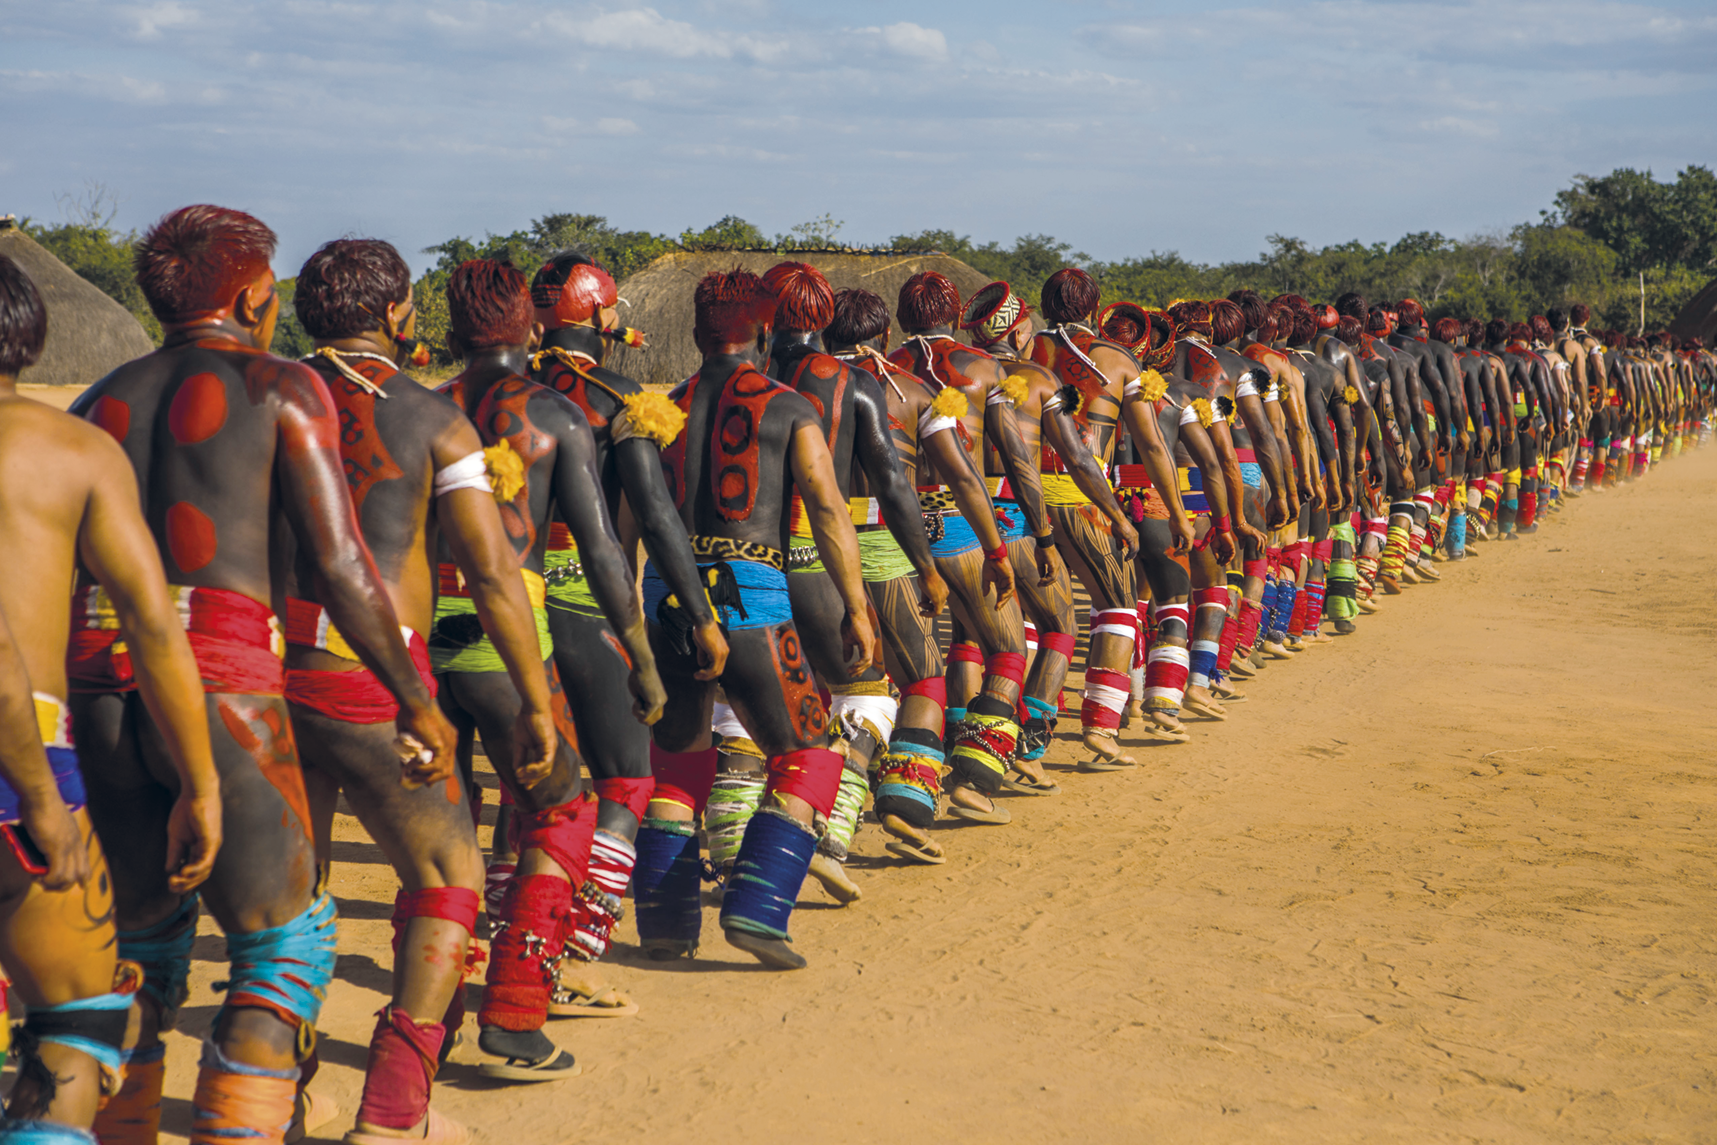 Fotografia. Diversos homens indígenas caminhando enfileirados em uma área de terra. Eles usam pinturas corporais pretas e vermelhas e adornos coloridos ao redor de suas cinturas, joelhos, canelas e braços. Ao fundo há árvores.